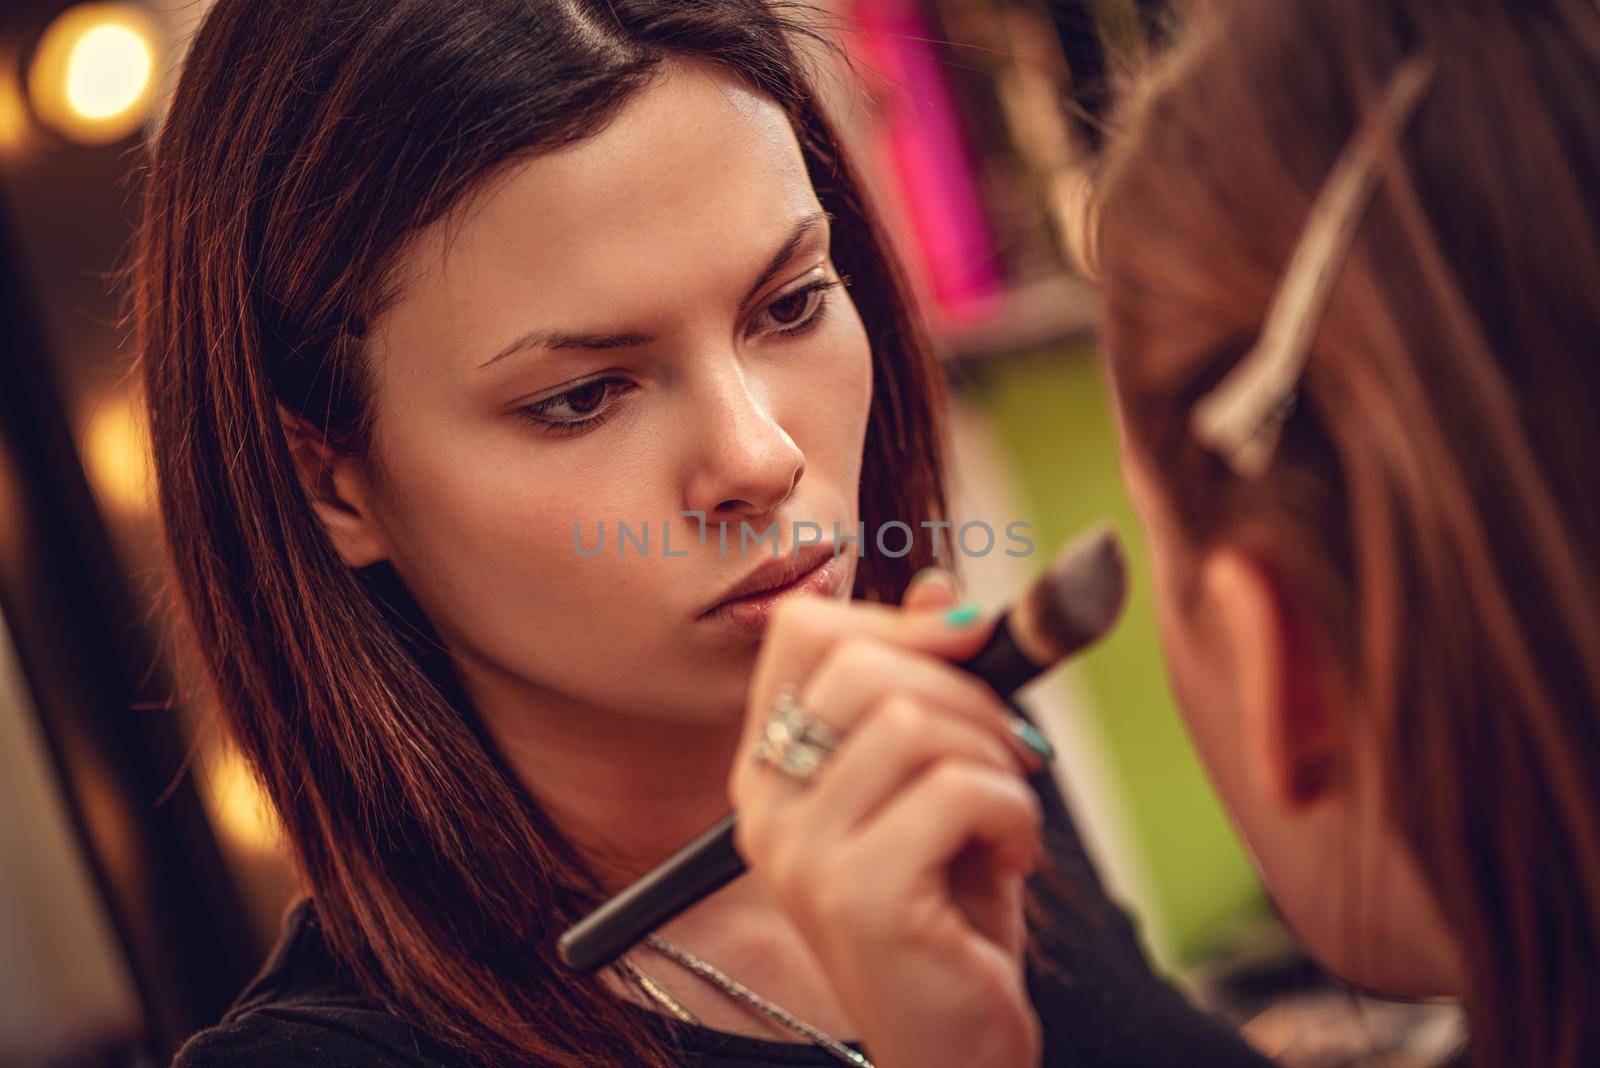 Makeup artist contouring beautiful girl's face with makeup brush. Close-up. 